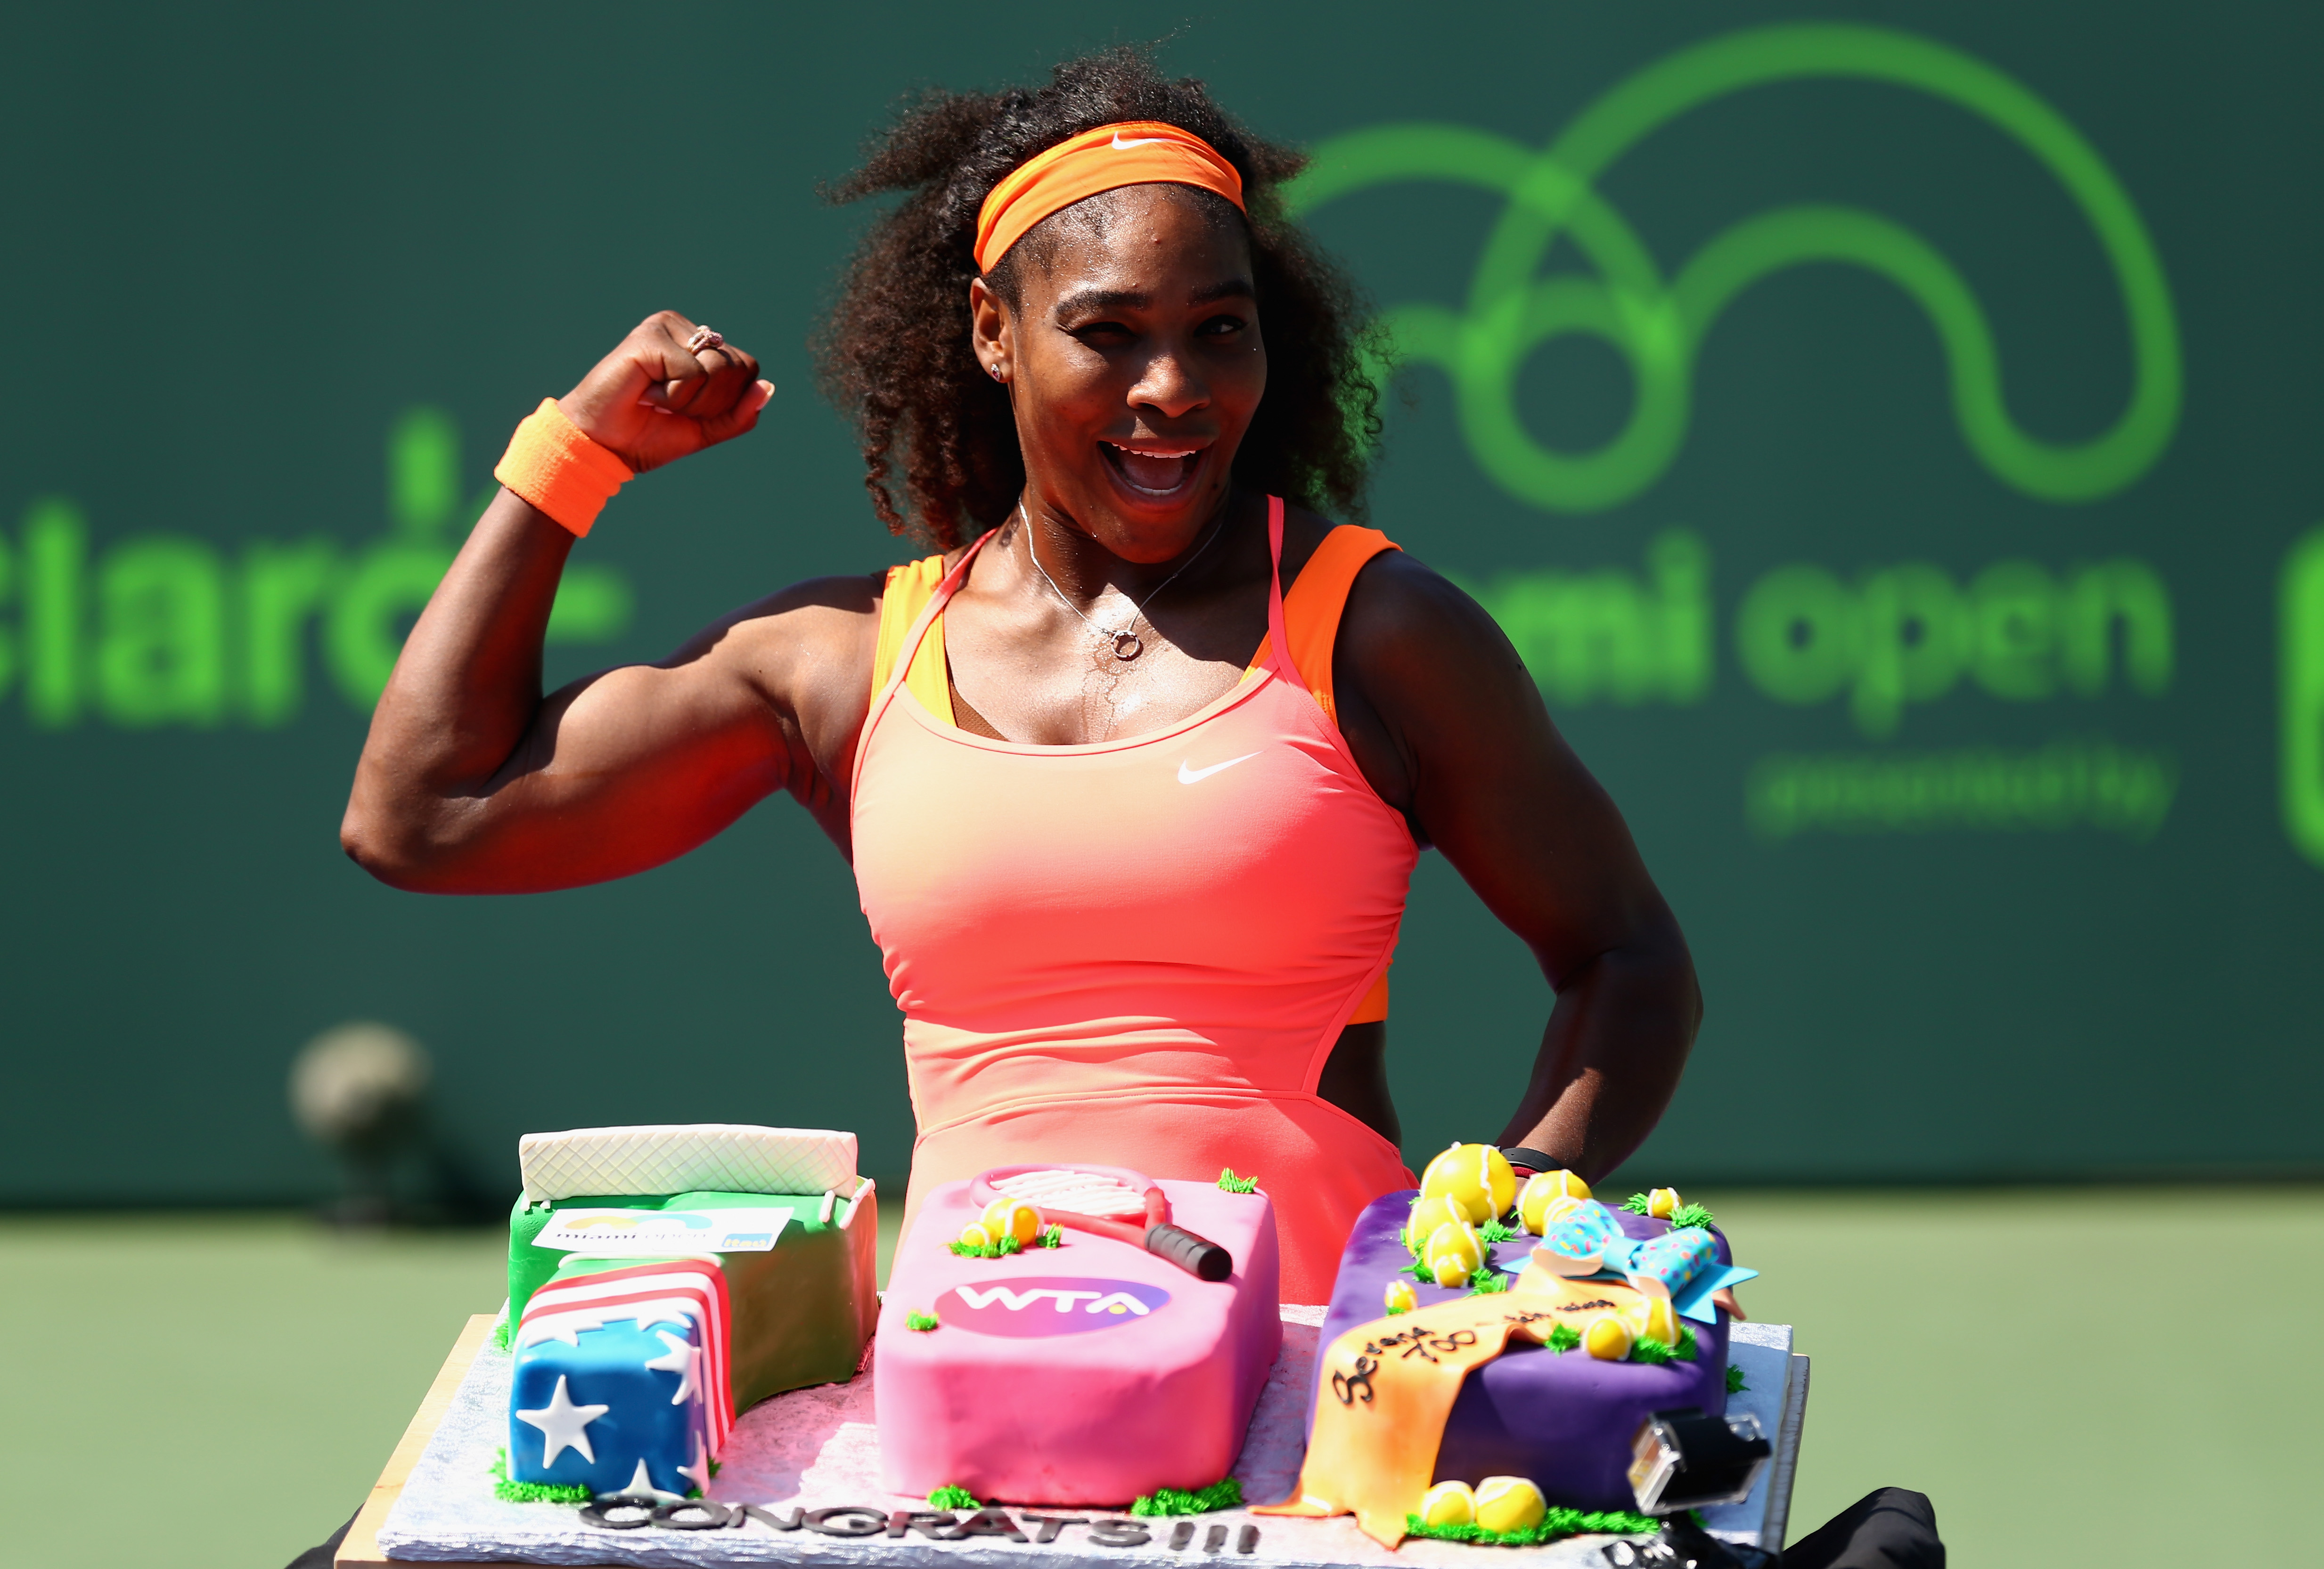 Serena Williams comemora sua marca com bolo, ainda em quadra, após a partida das quartas de final